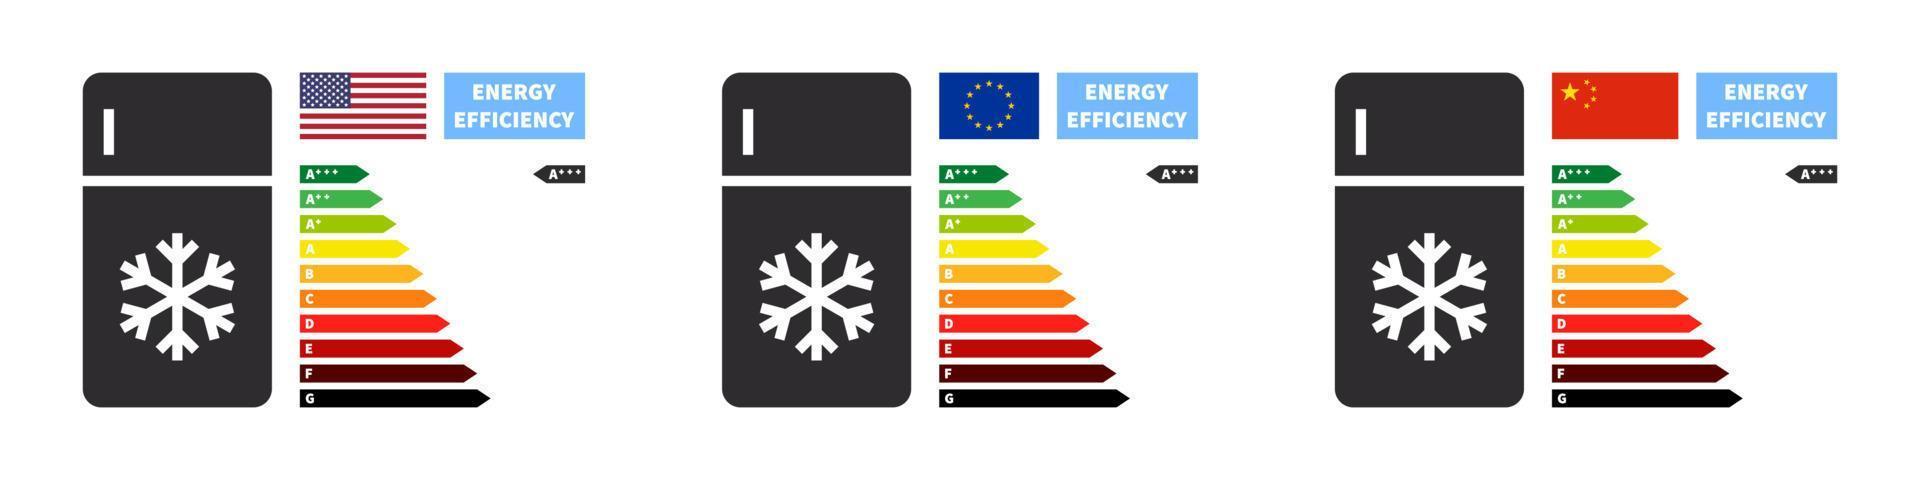 casa elettrodomestici e energia efficienza valutazione. energia efficienza e valutazione grafico. vettore illustrazione